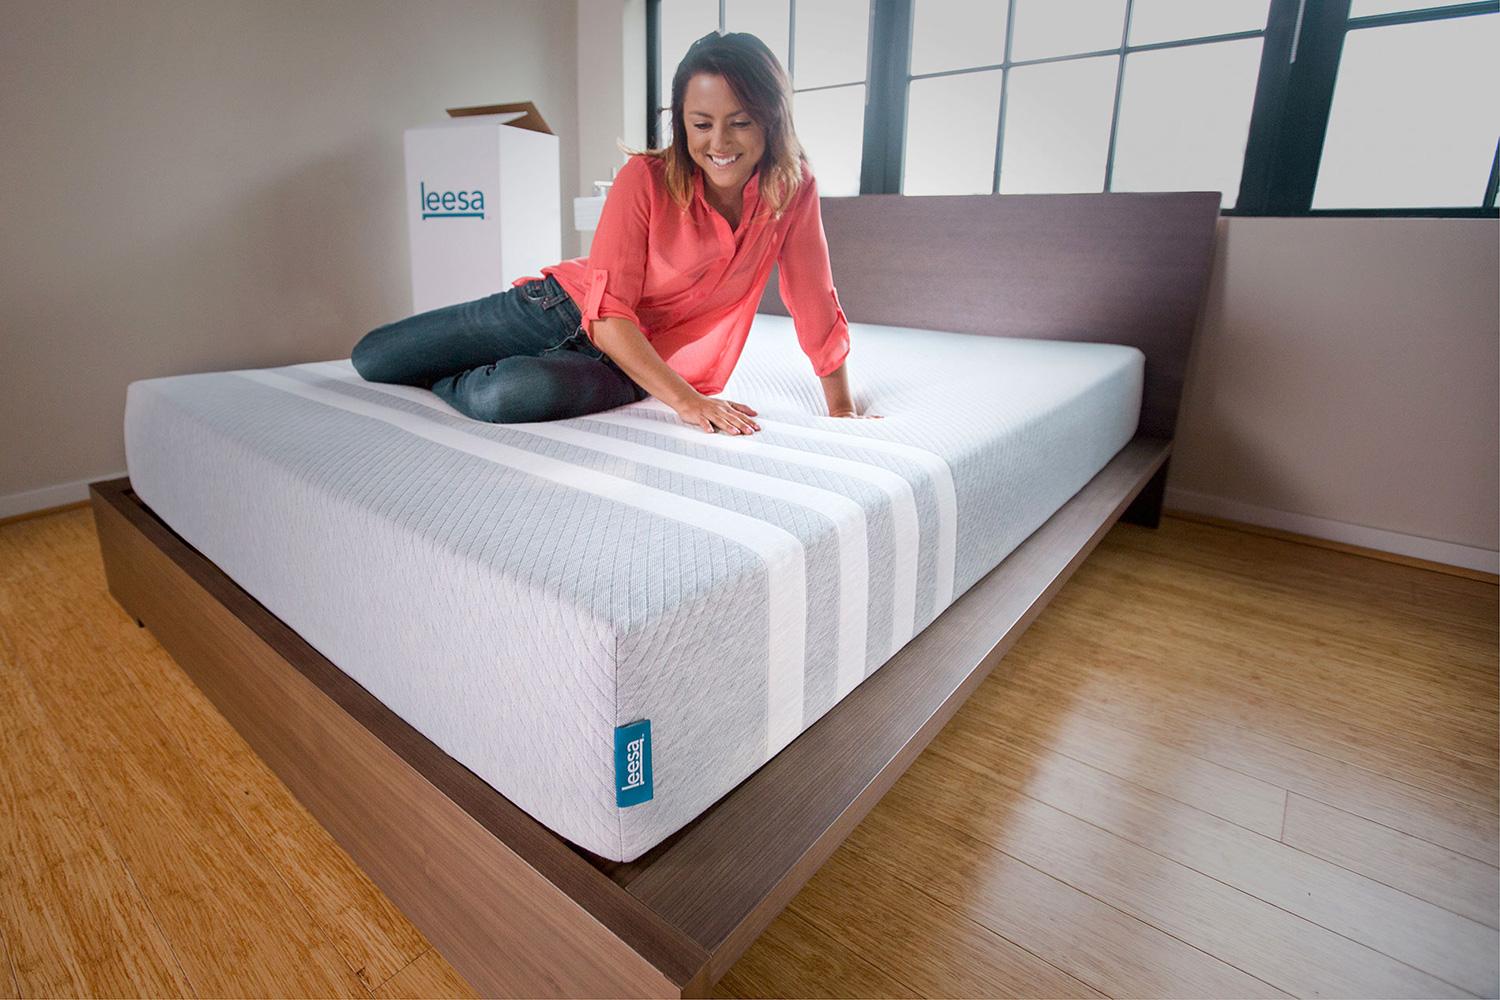 leesa mattress review 0001